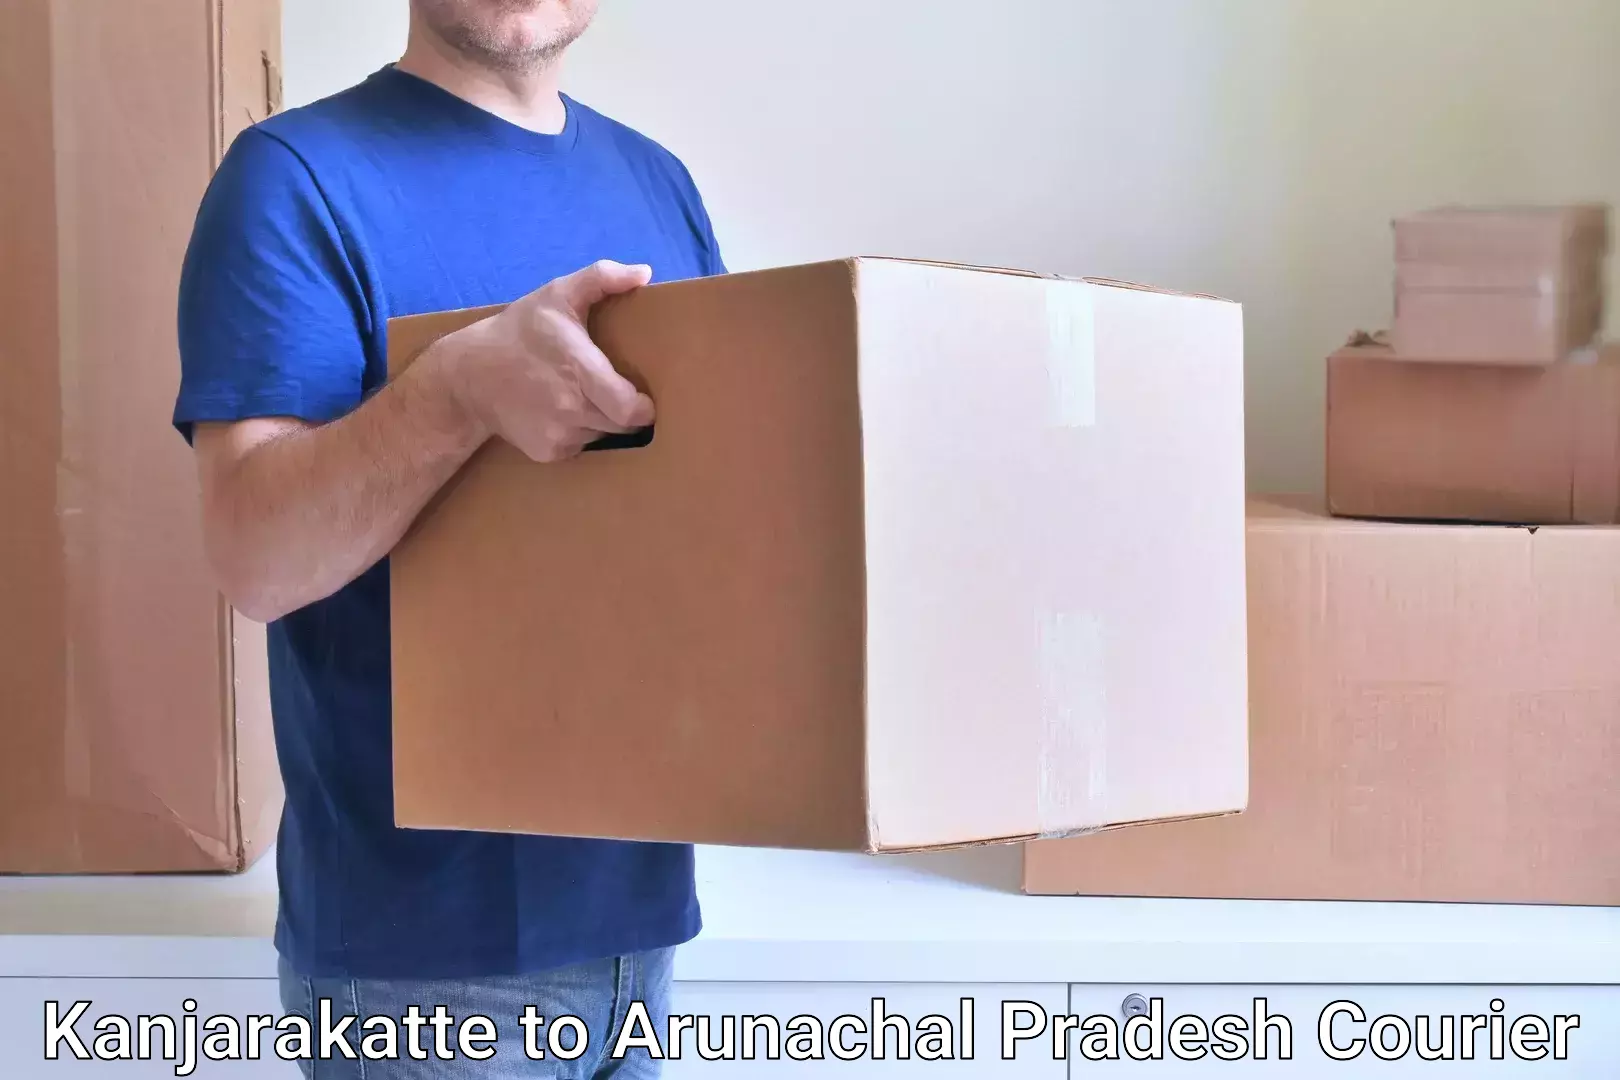 Budget-friendly shipping Kanjarakatte to Arunachal Pradesh